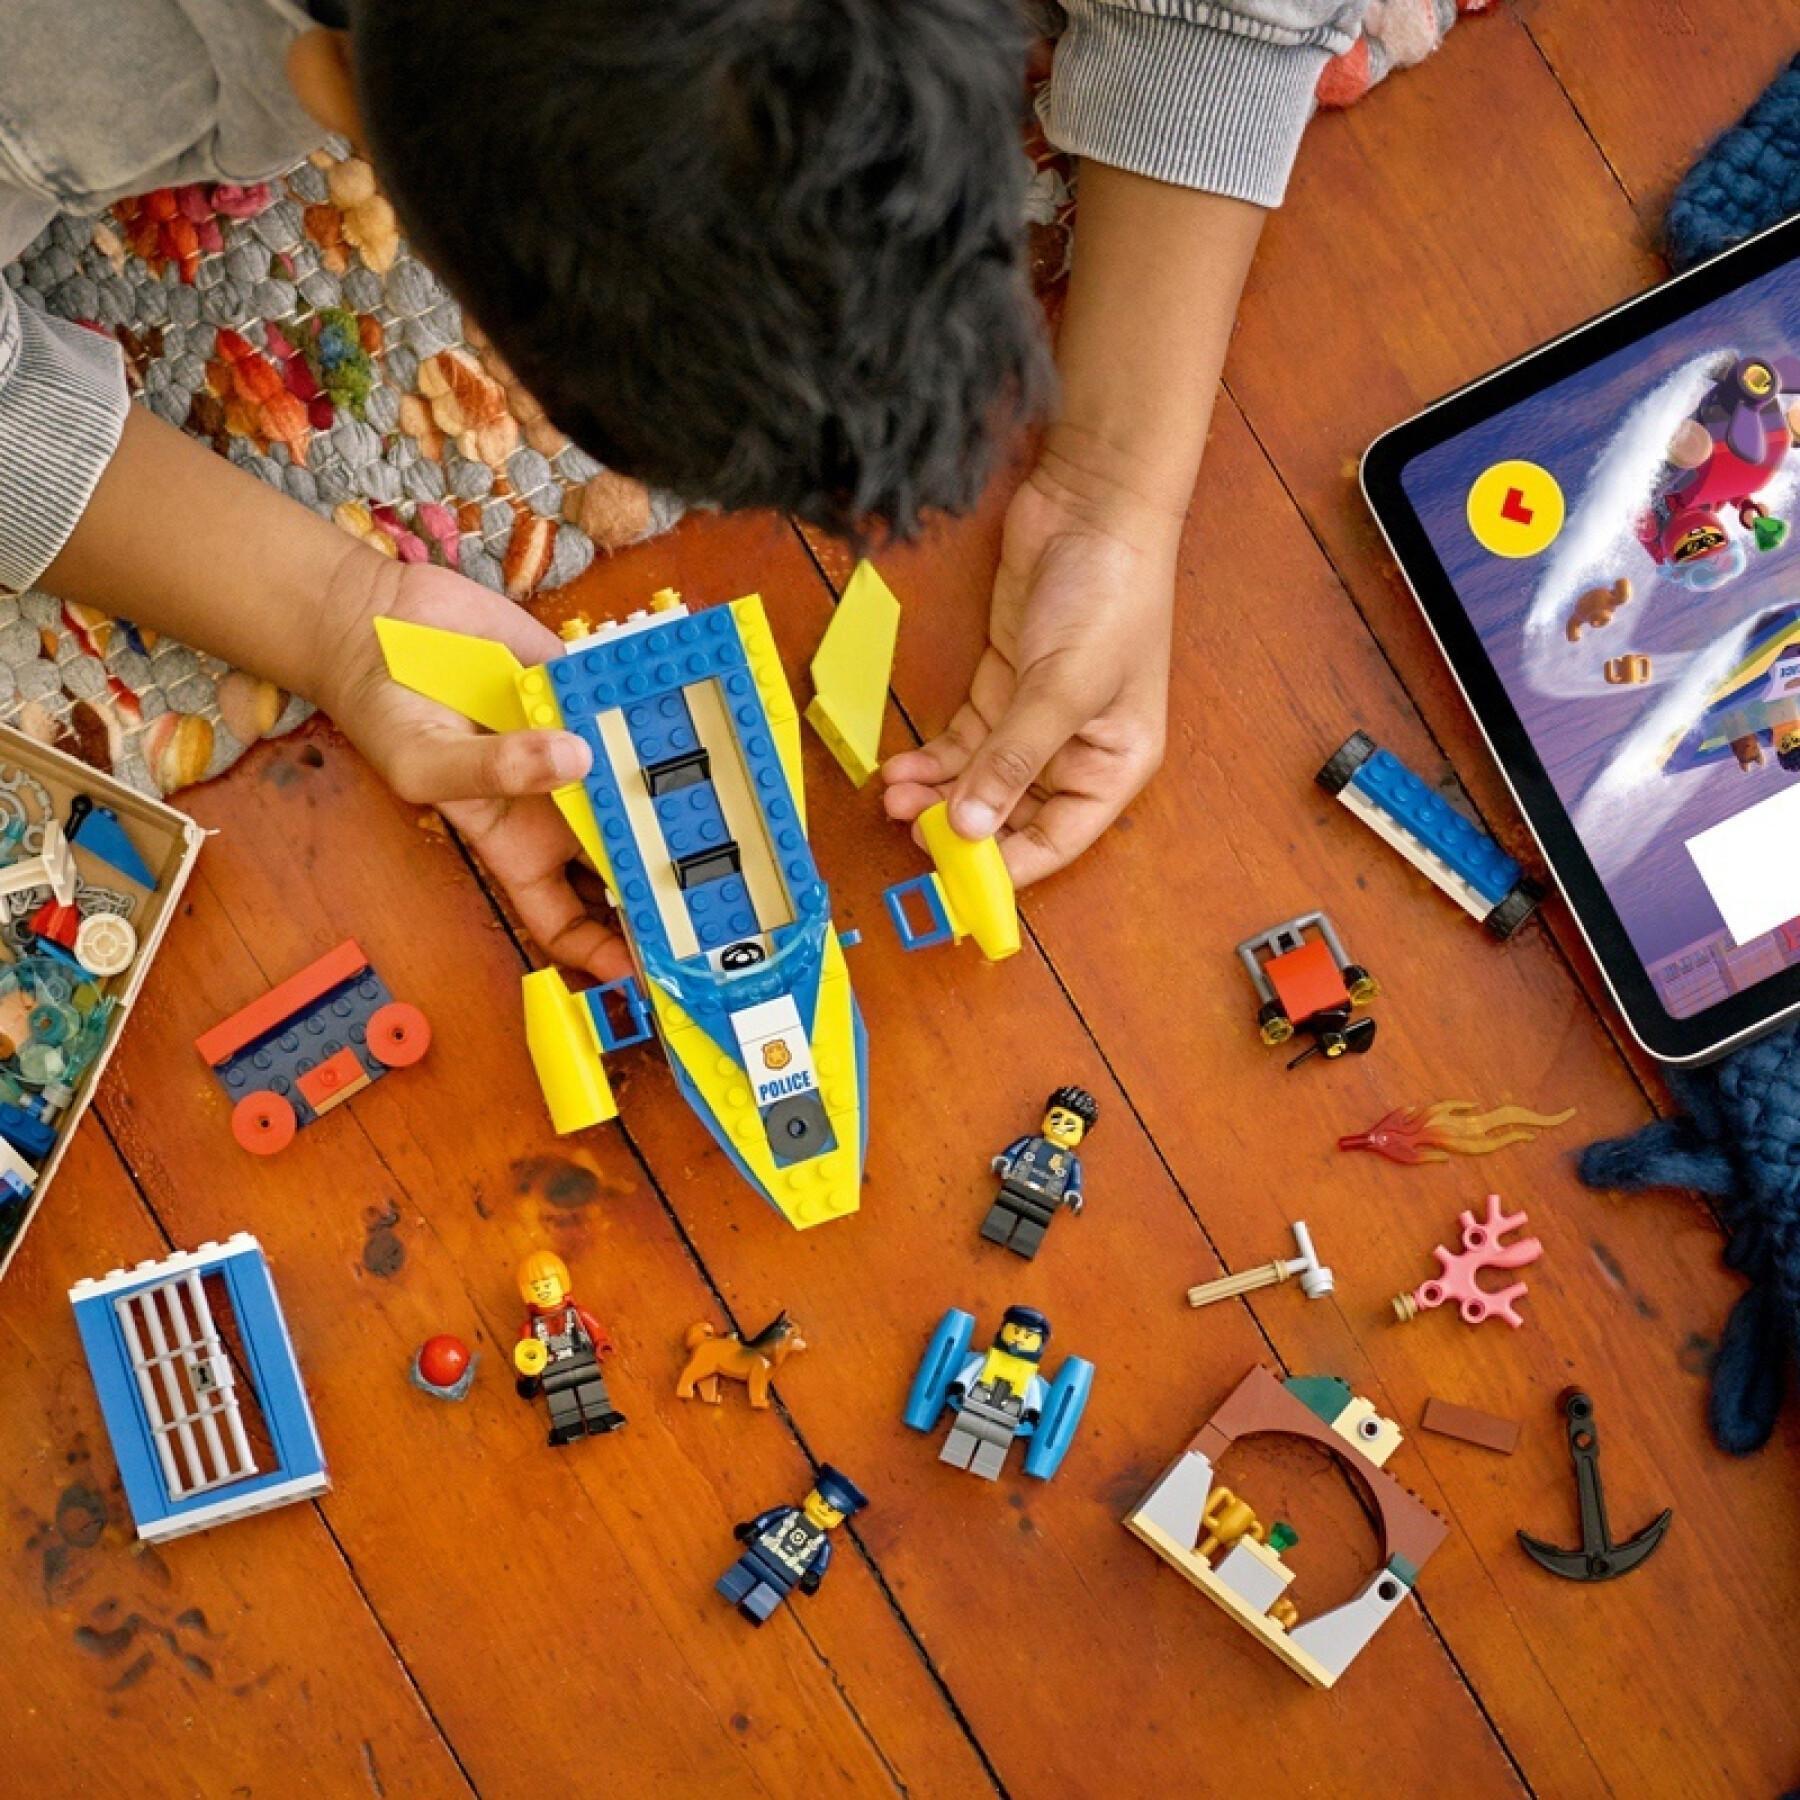 Missie boot bouwen spelletjes Lego Police Eau City